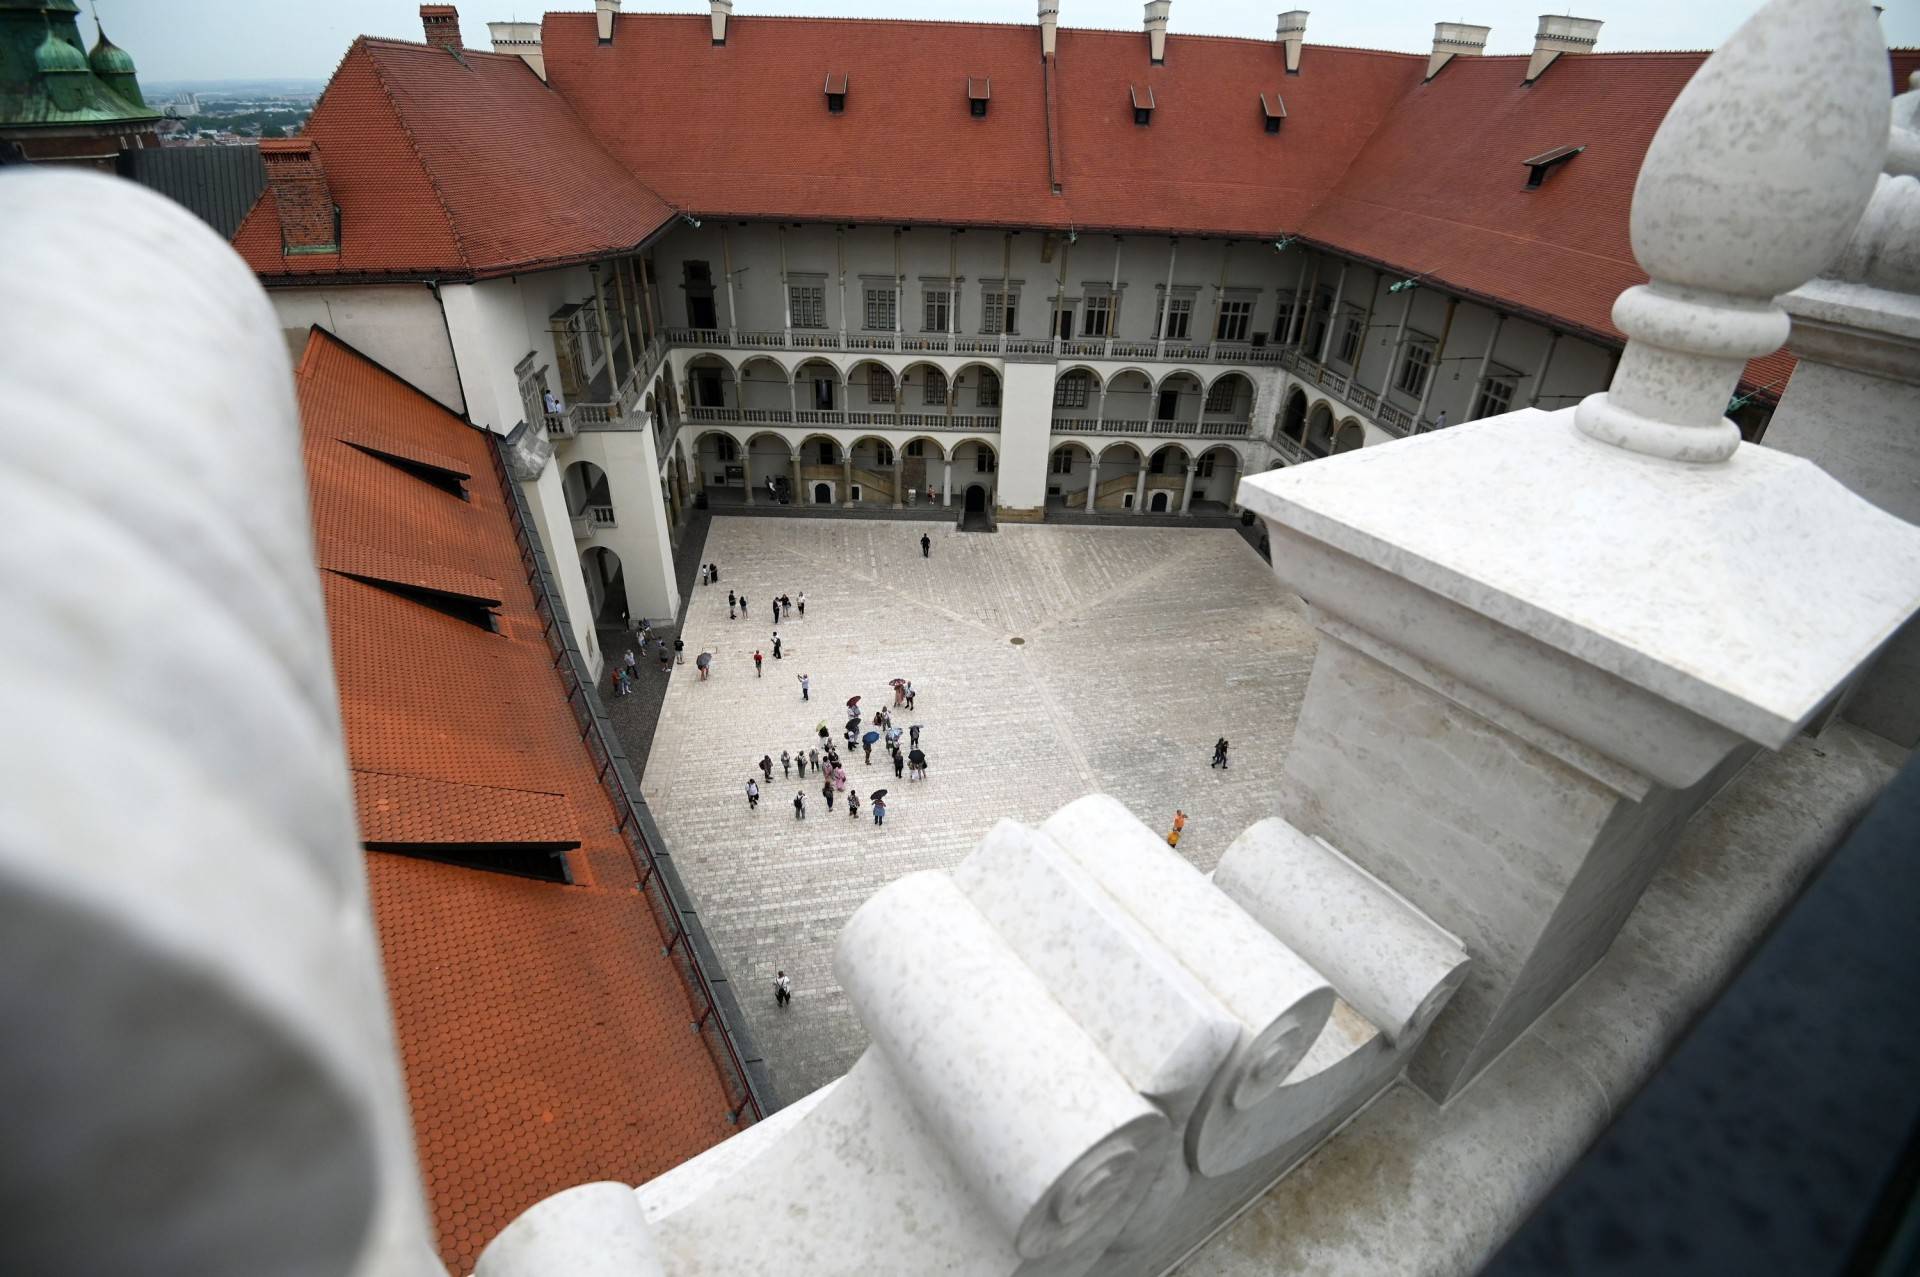 Nowy taras widokowy na Wawelu. Wejście wymaga nieco wysiłku